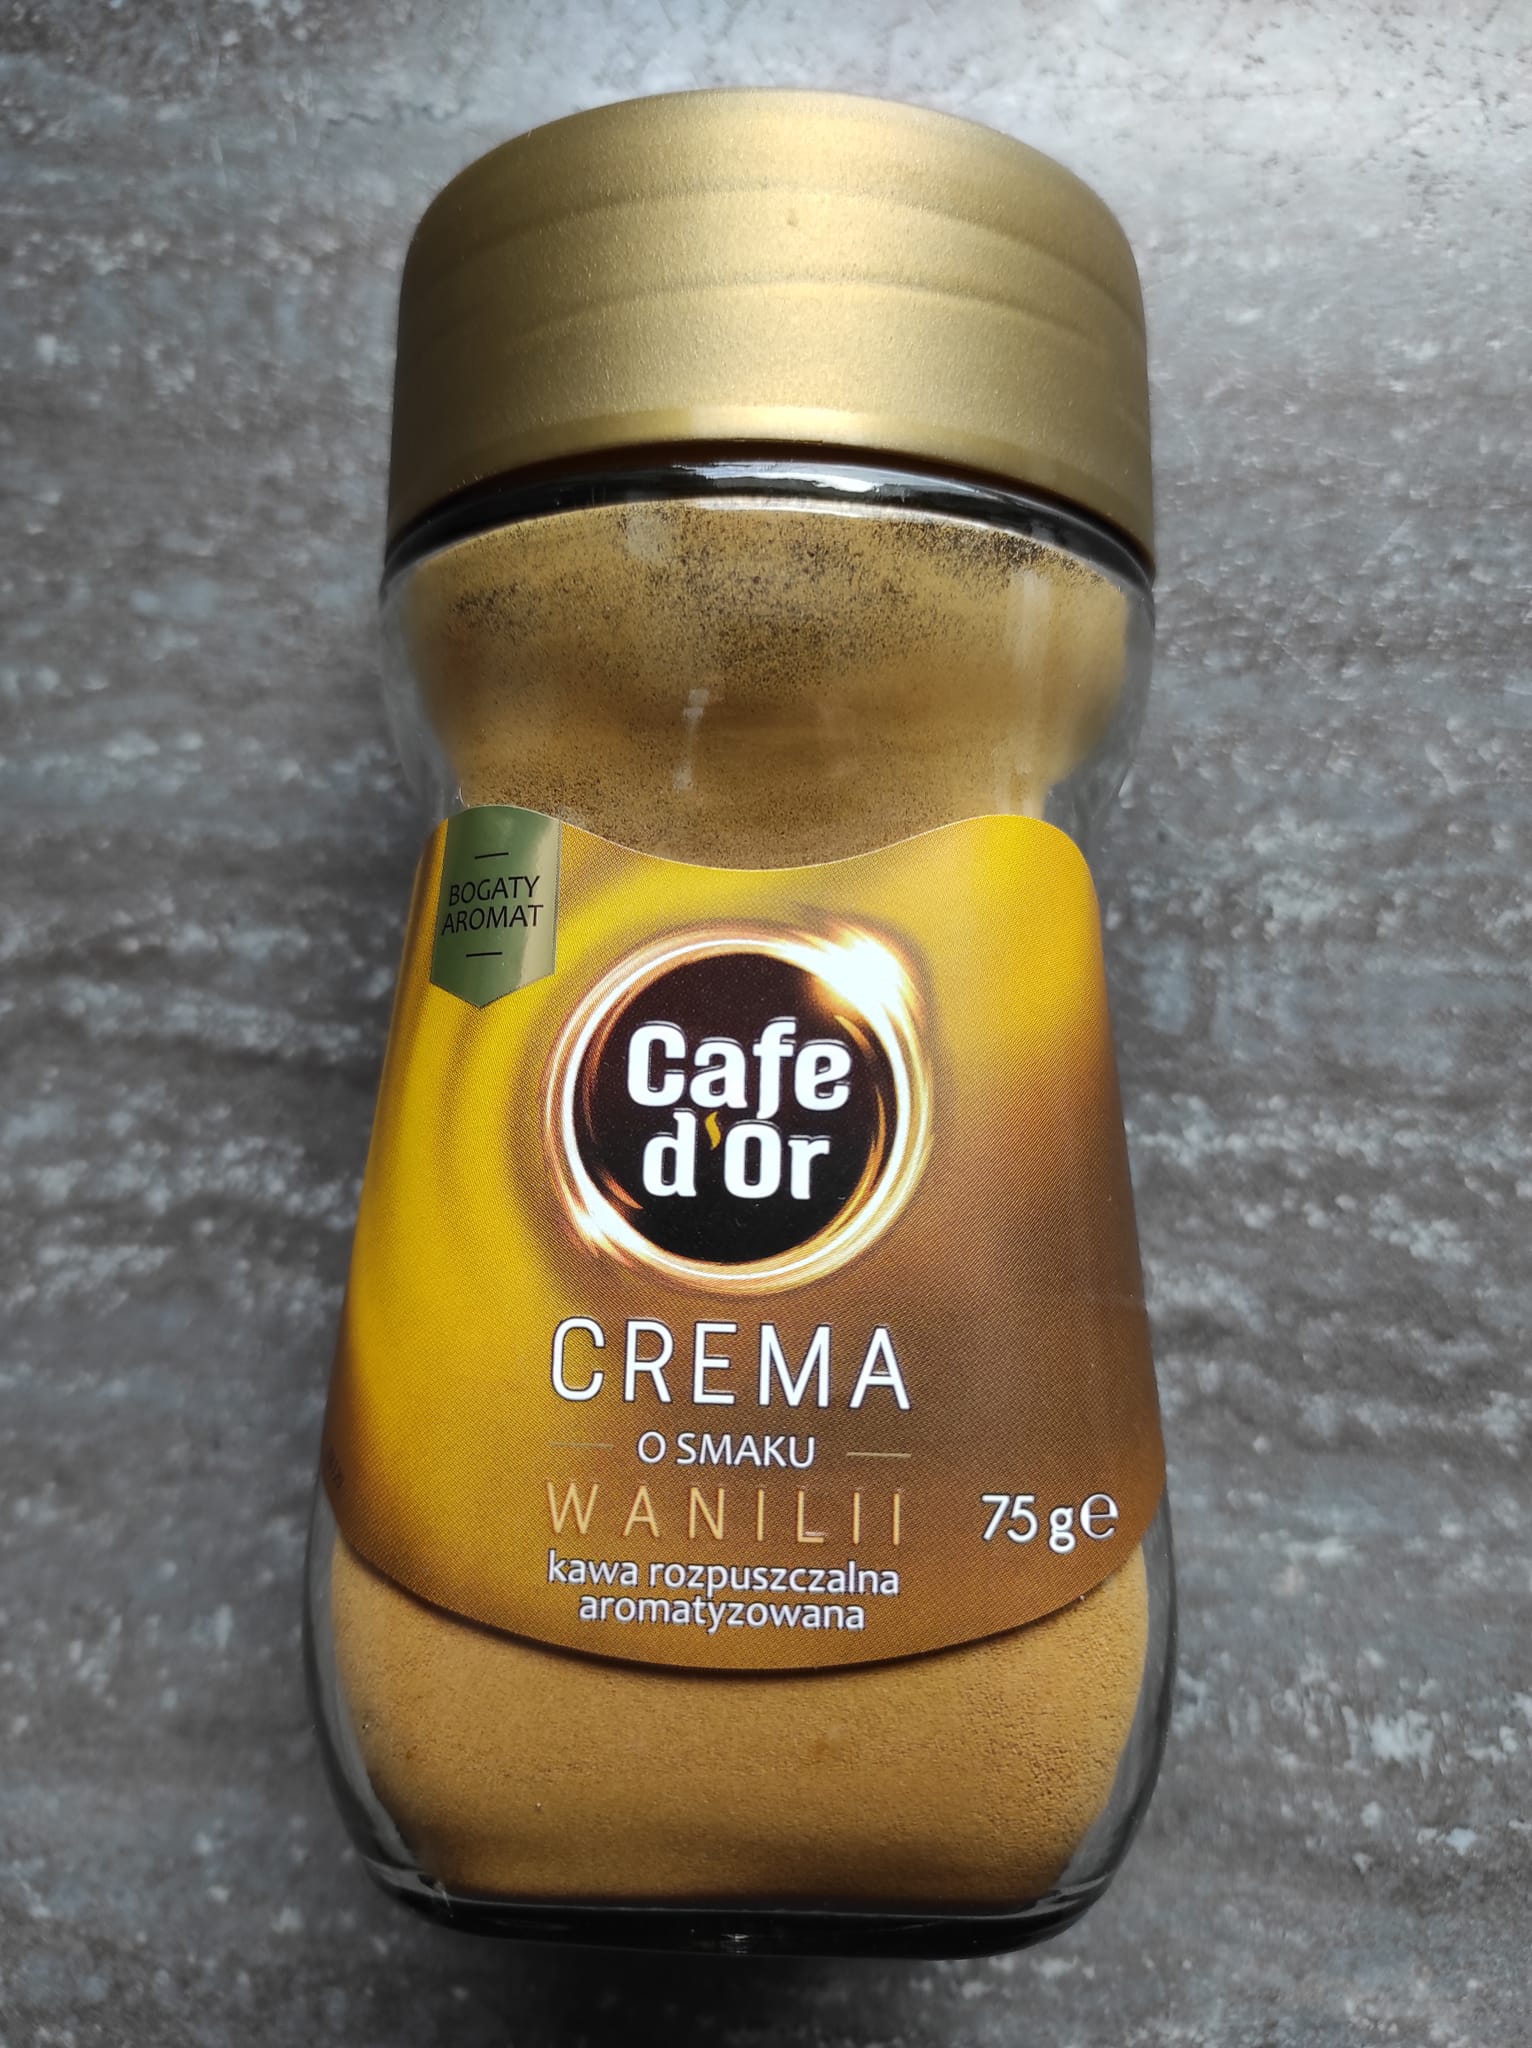 Kawa rozpuszczalna aromatyzowana crema o smaku wanilii Cafe D’or 5 (1)